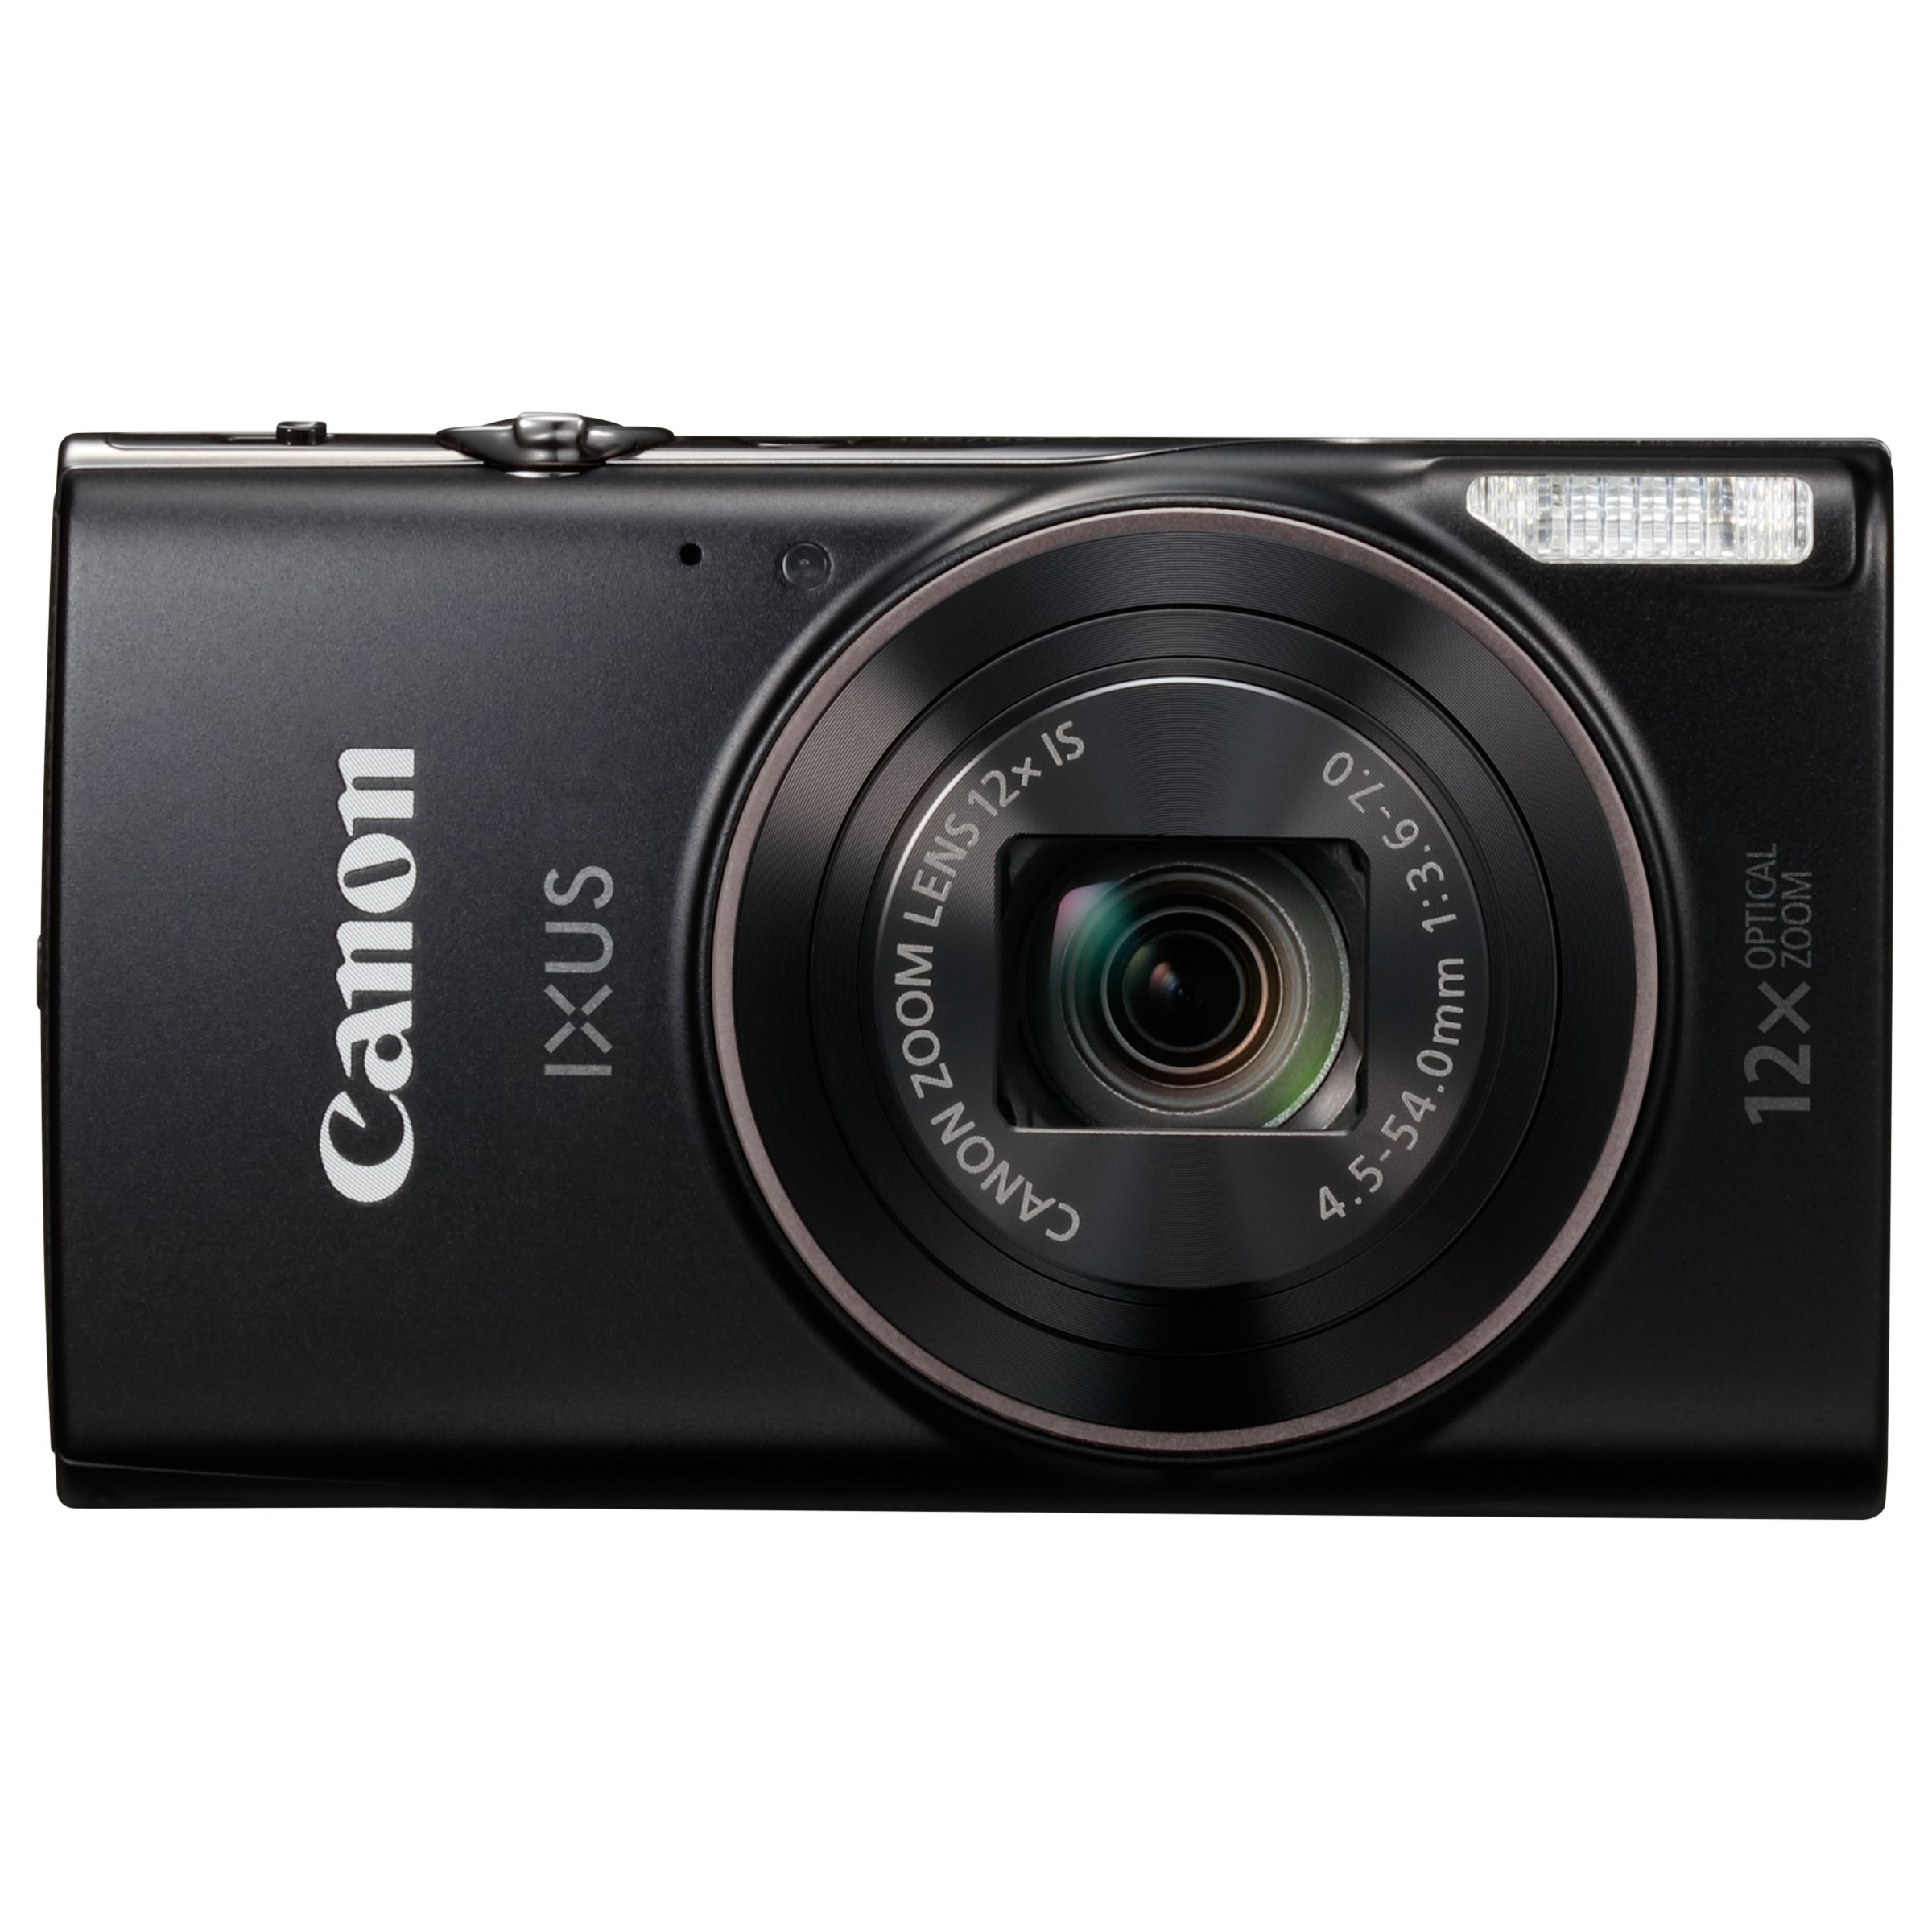 Evalueerbaar Nationaal Gewoon Canon IXUS 285 HS Digital Camera Kit, Full HD 1080p, 20.2MP, 12x Optical  Zoom, 24x